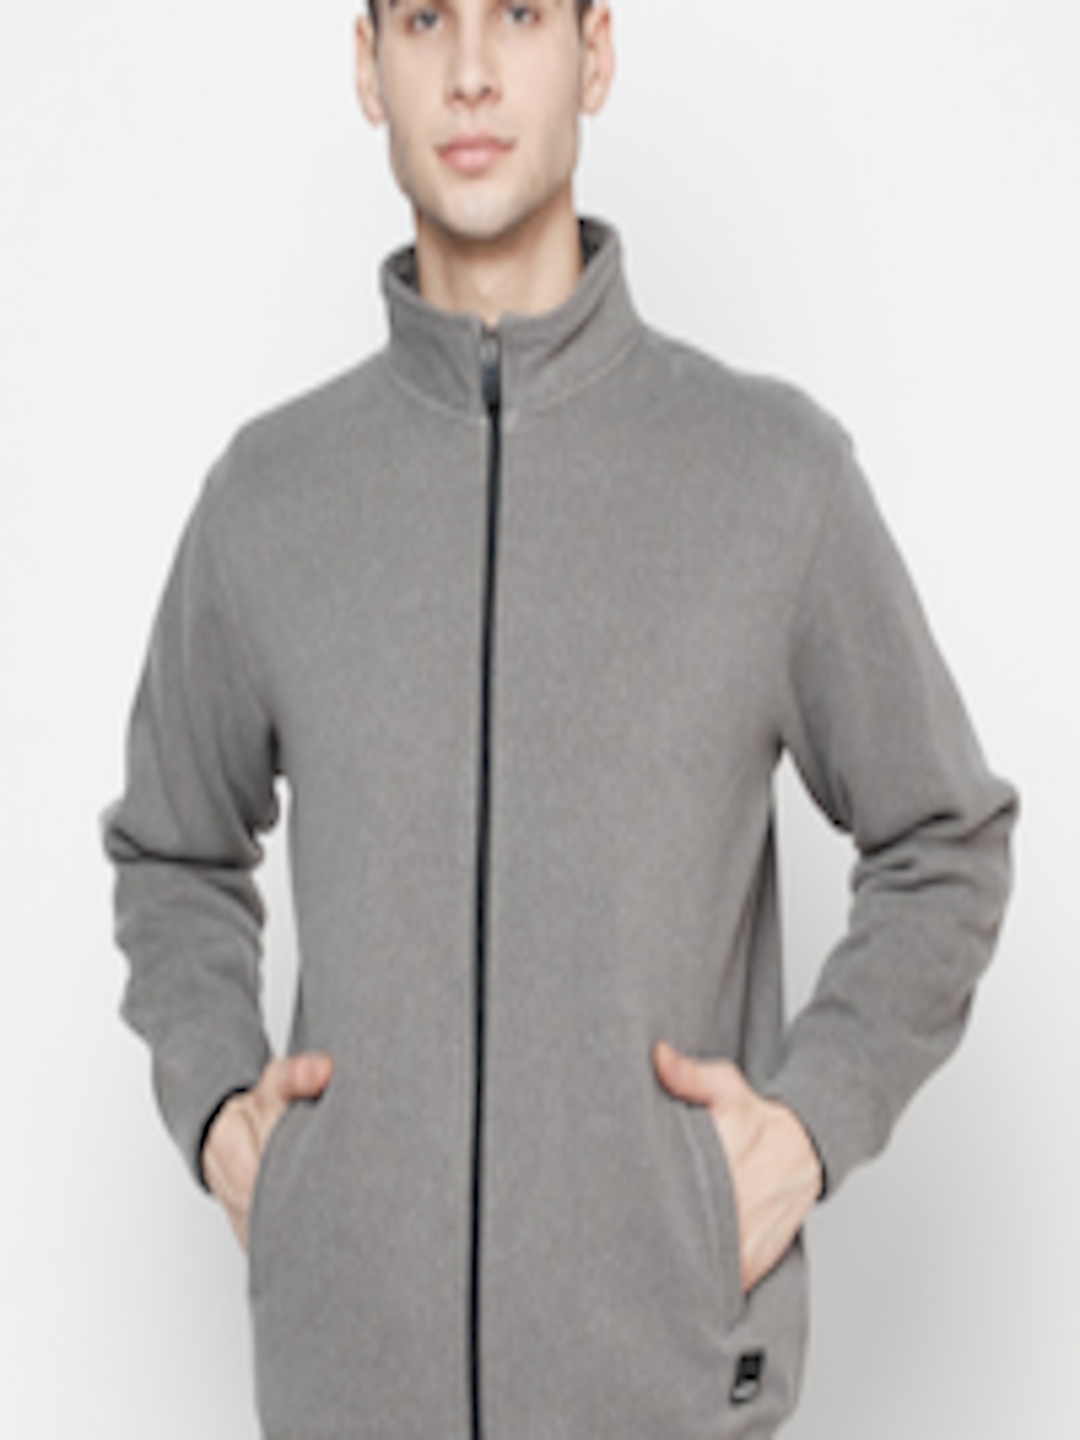 Buy Octave Men Grey Sweatshirt - Sweatshirts for Men 15842290 | Myntra